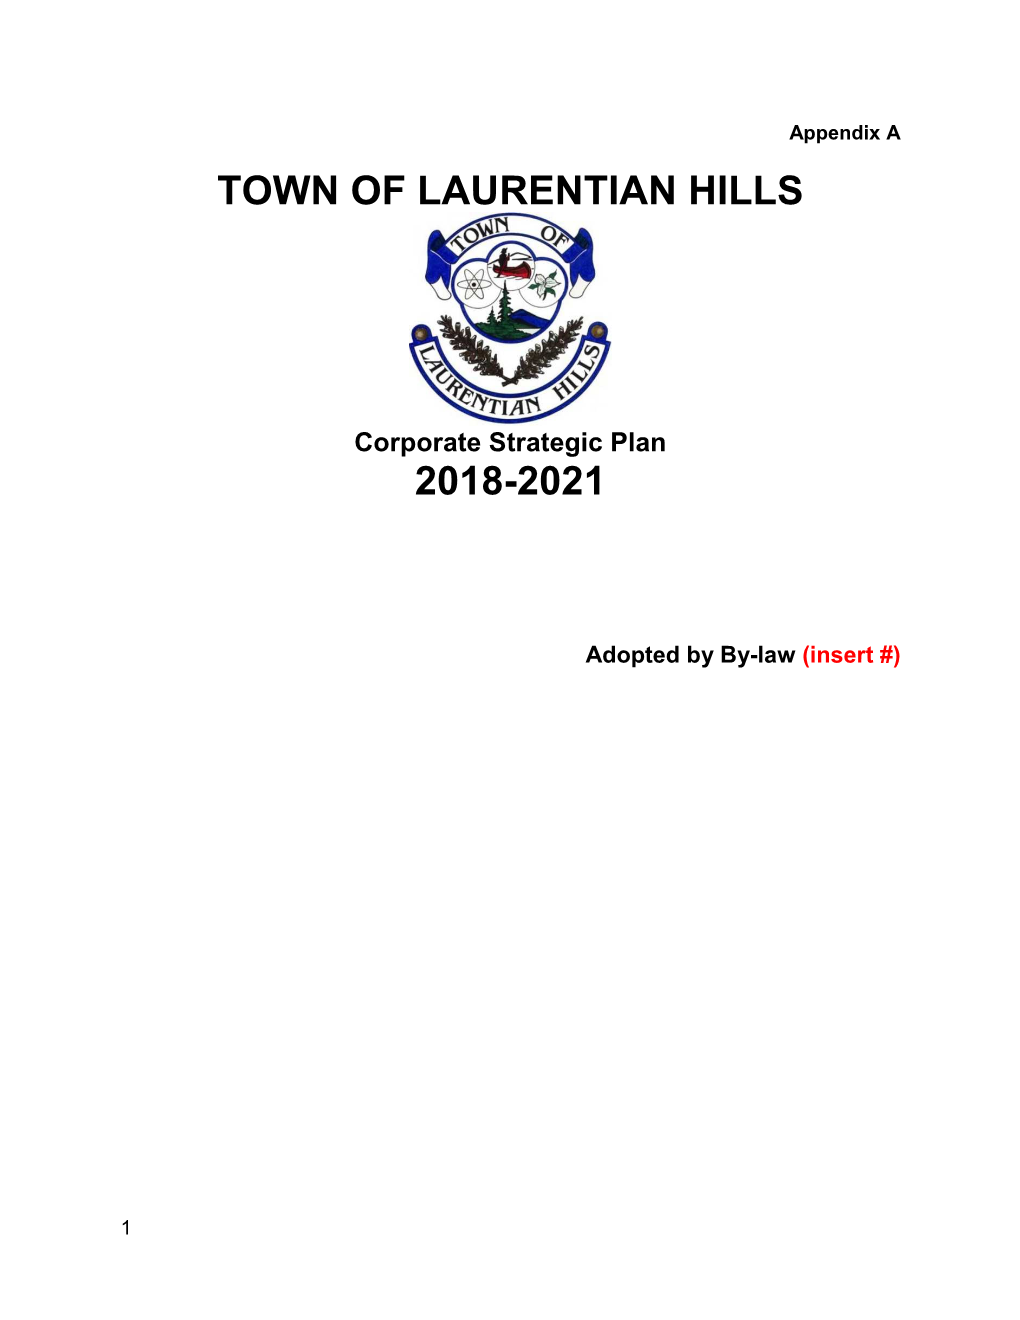 Town of Laurentian Hills 2018-2021